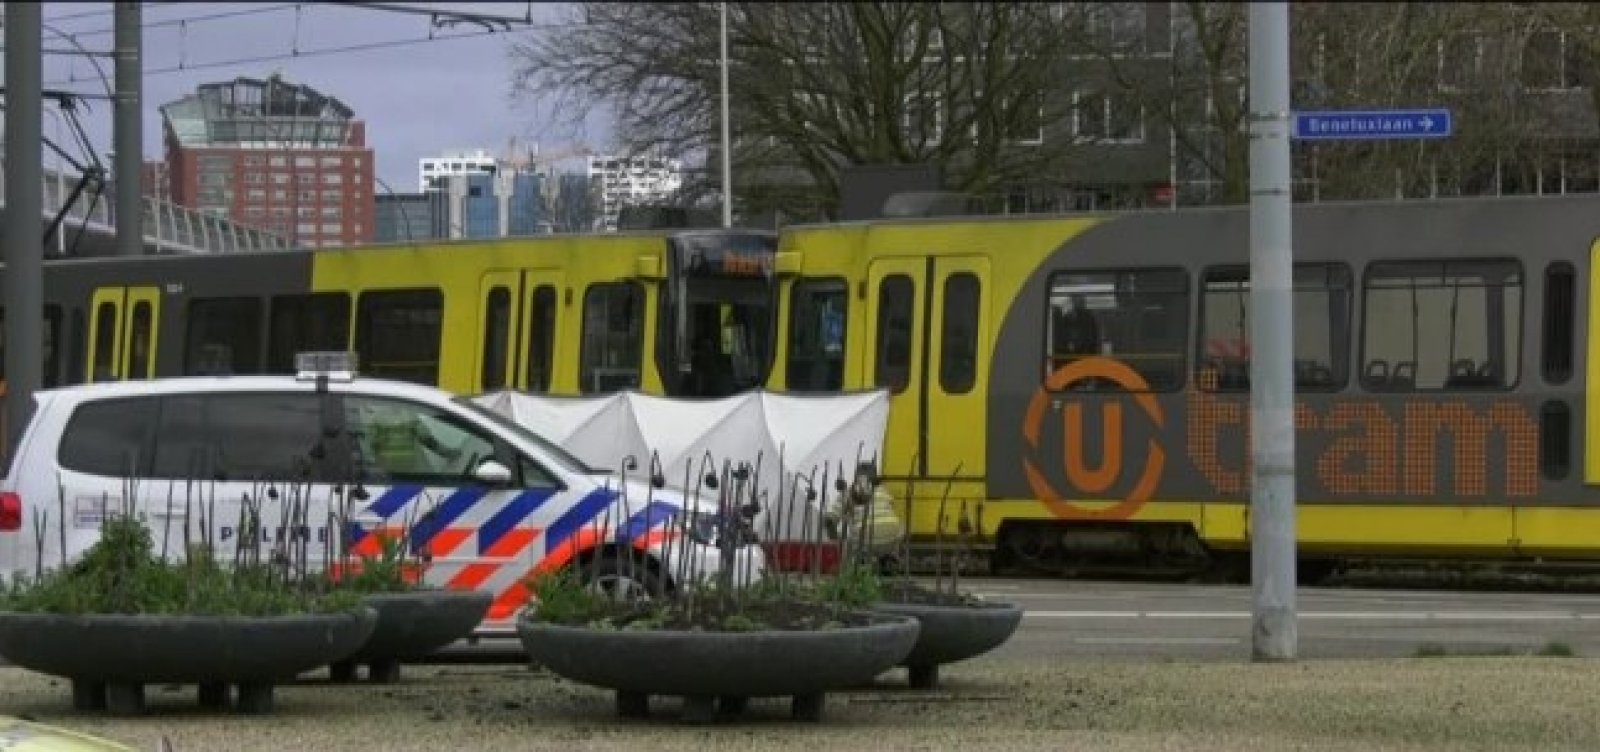 Tiroteio deixa um morto e vários feridos na Holanda